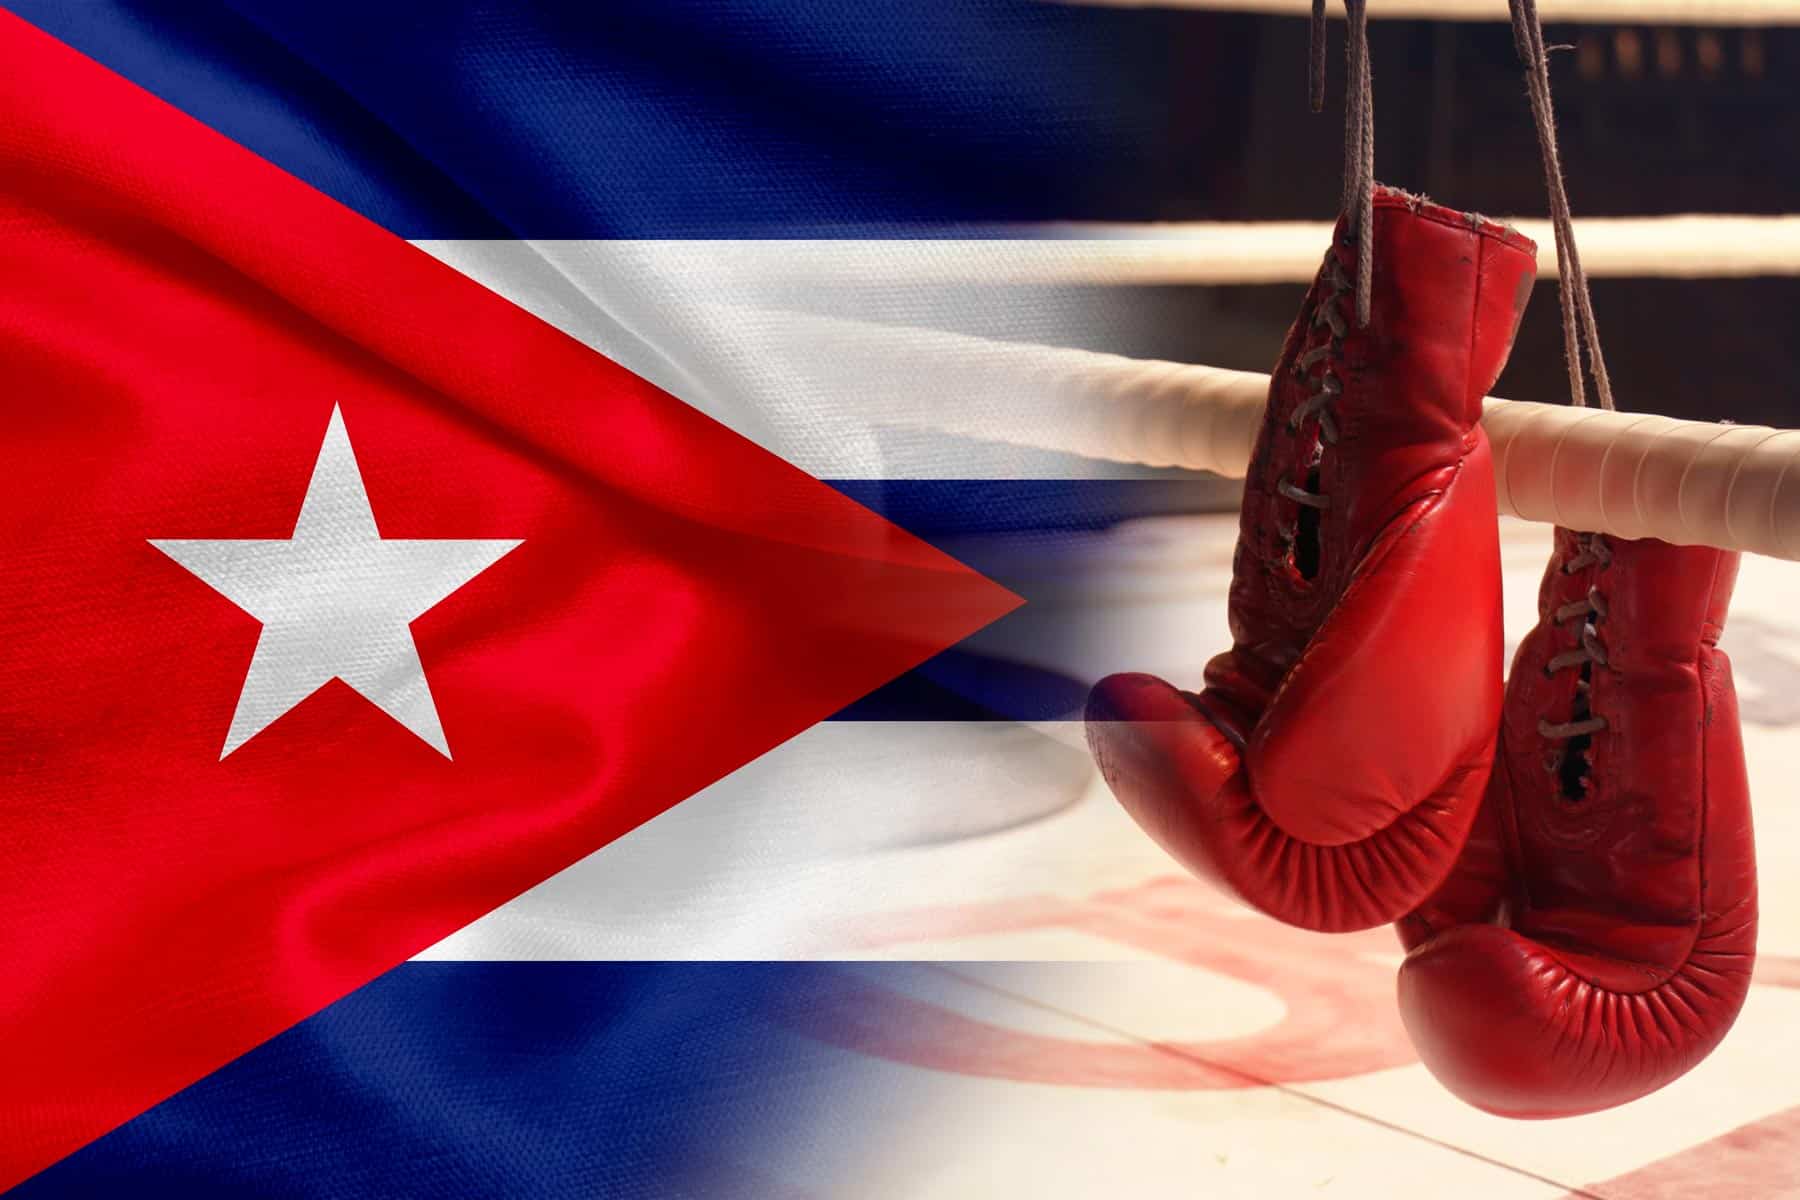 Cuba Modifica Delegación de Boxeo para Juegos Panamericanos 2023